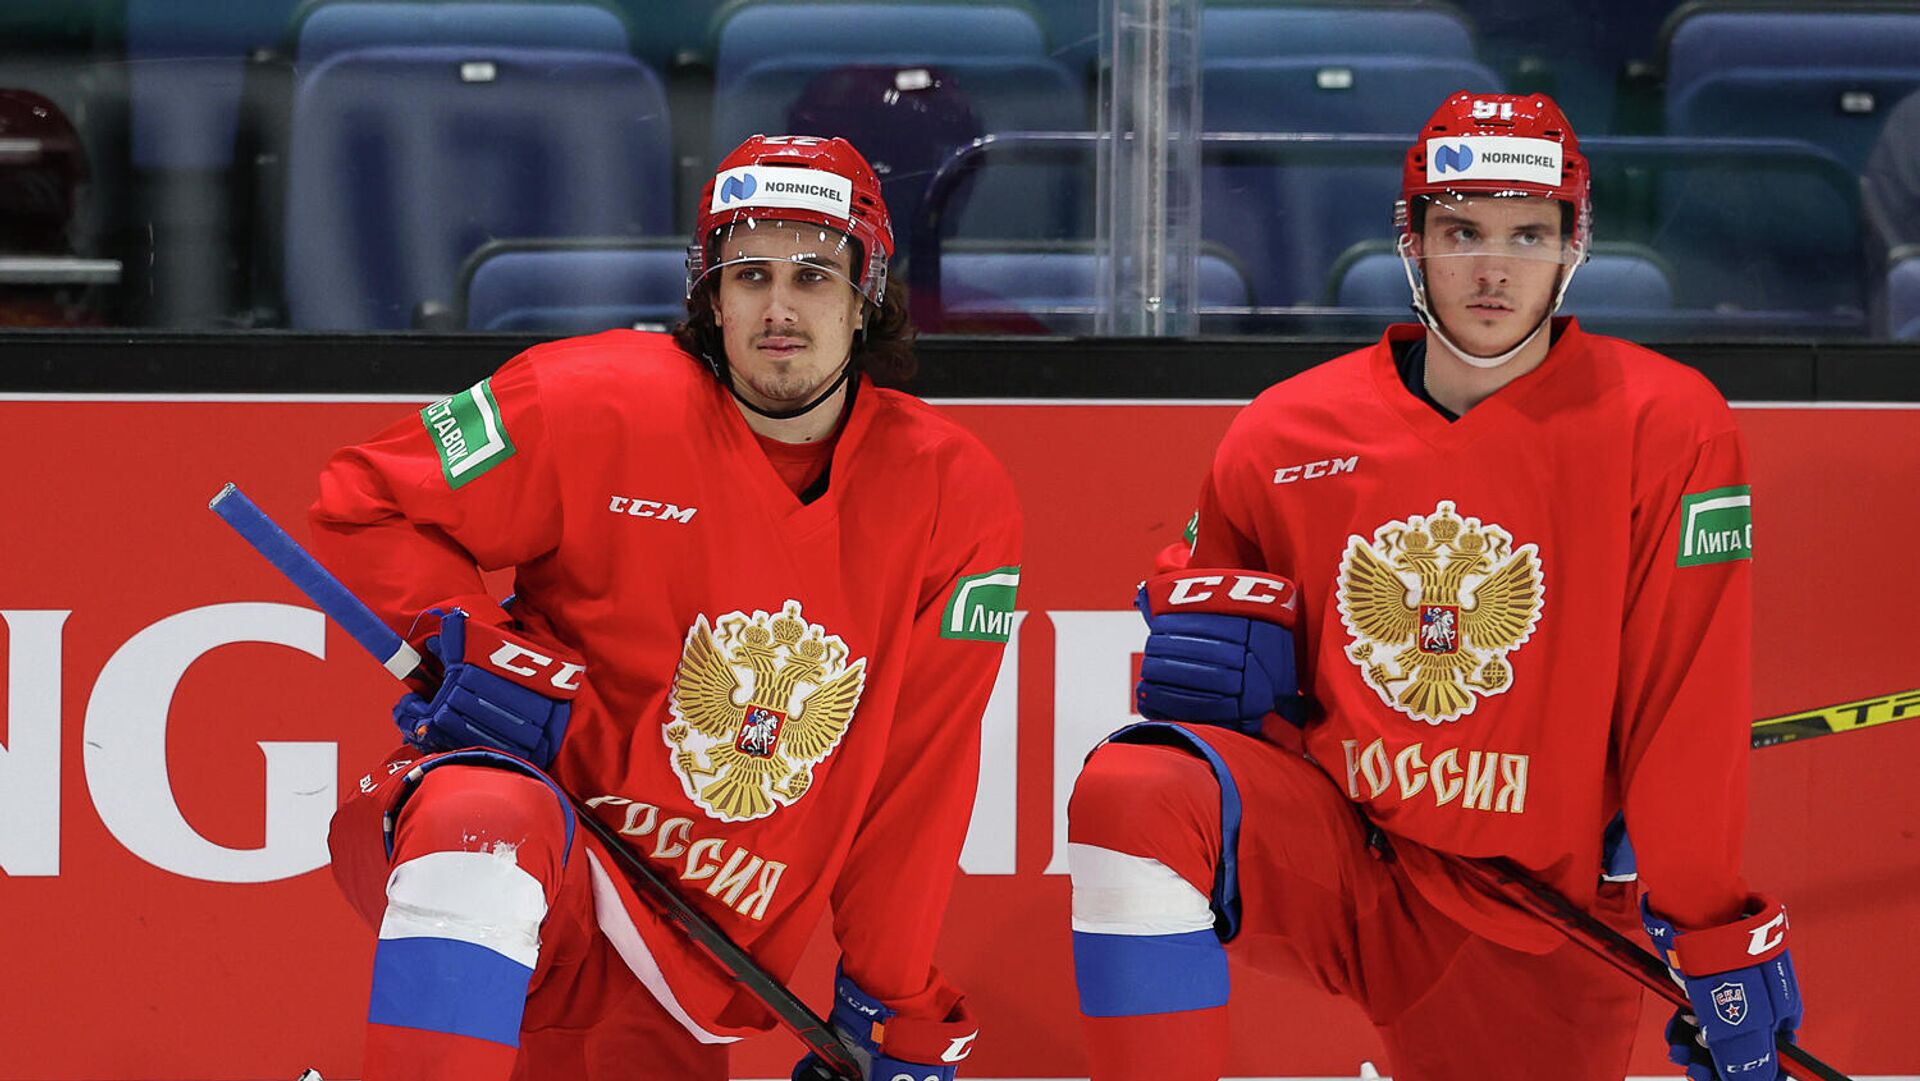 Хоккеисты Сборной России Фото И Фамилии